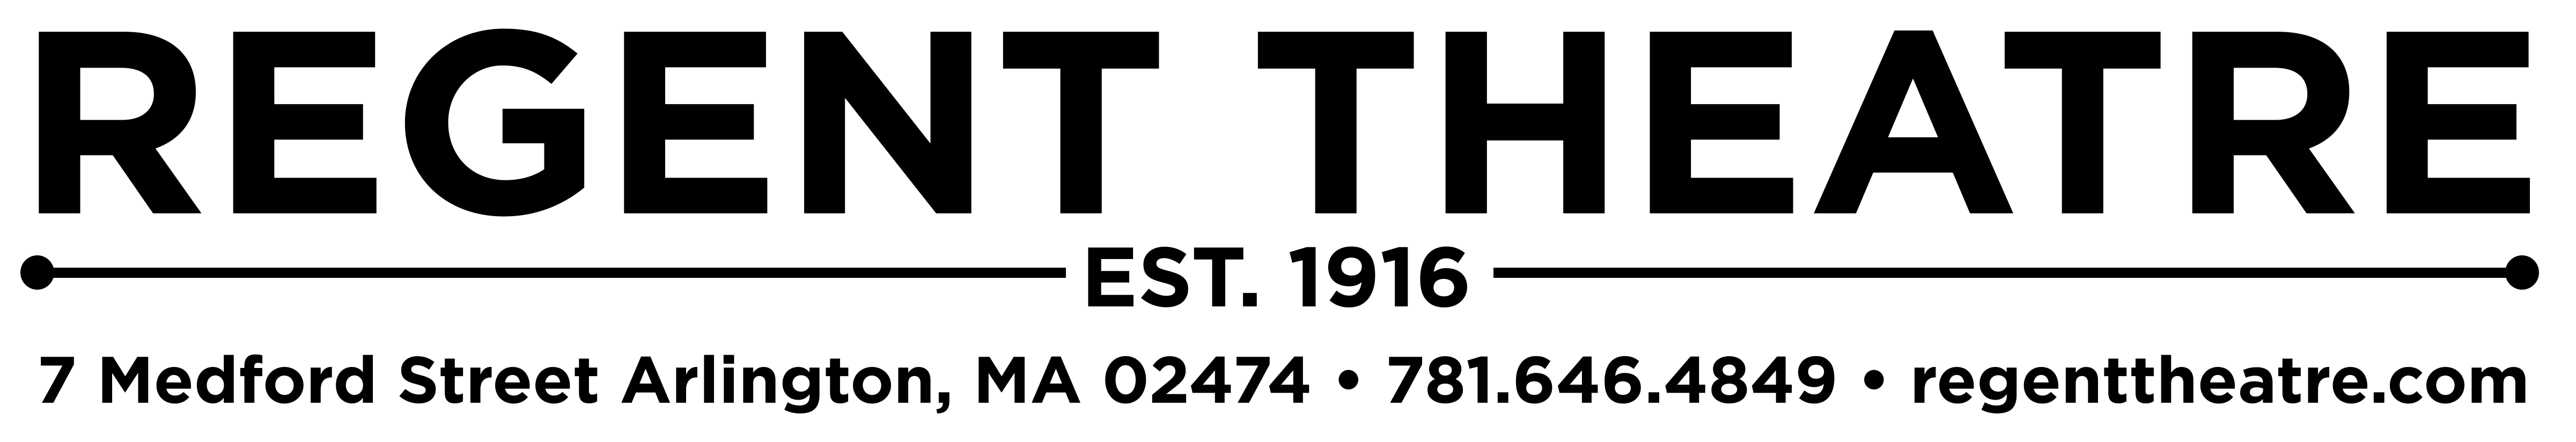 regent-theatre-arlington-logo